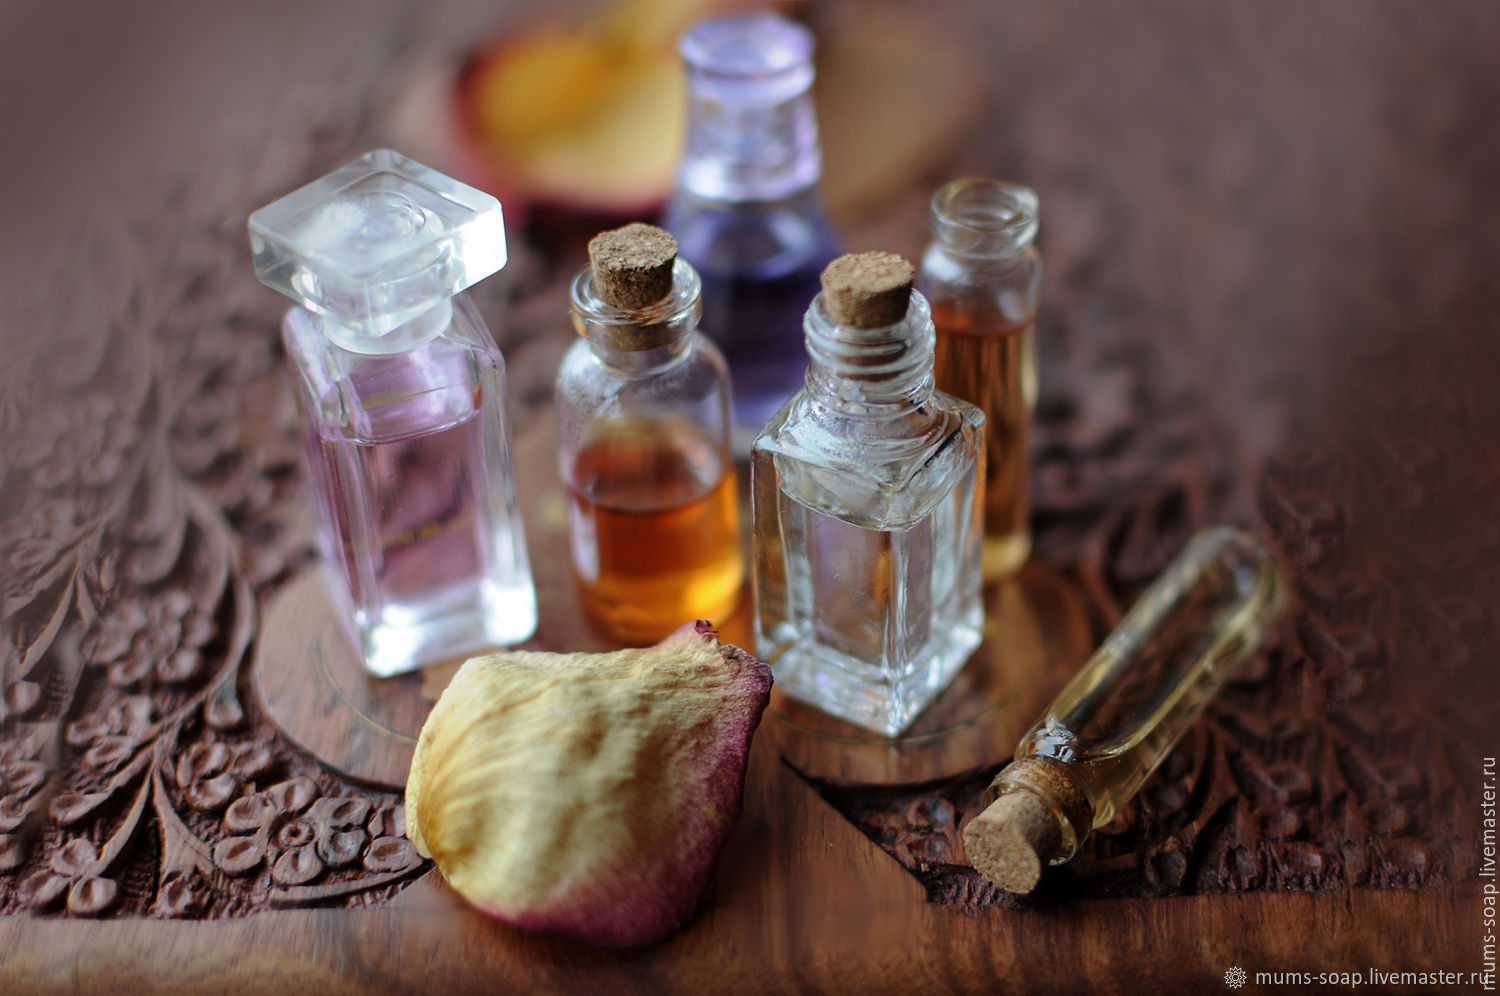 Классификация ароматов по запахам – цветочные, шипровые, древесные, цитрусовые, кожаные, амбровые, фужеры